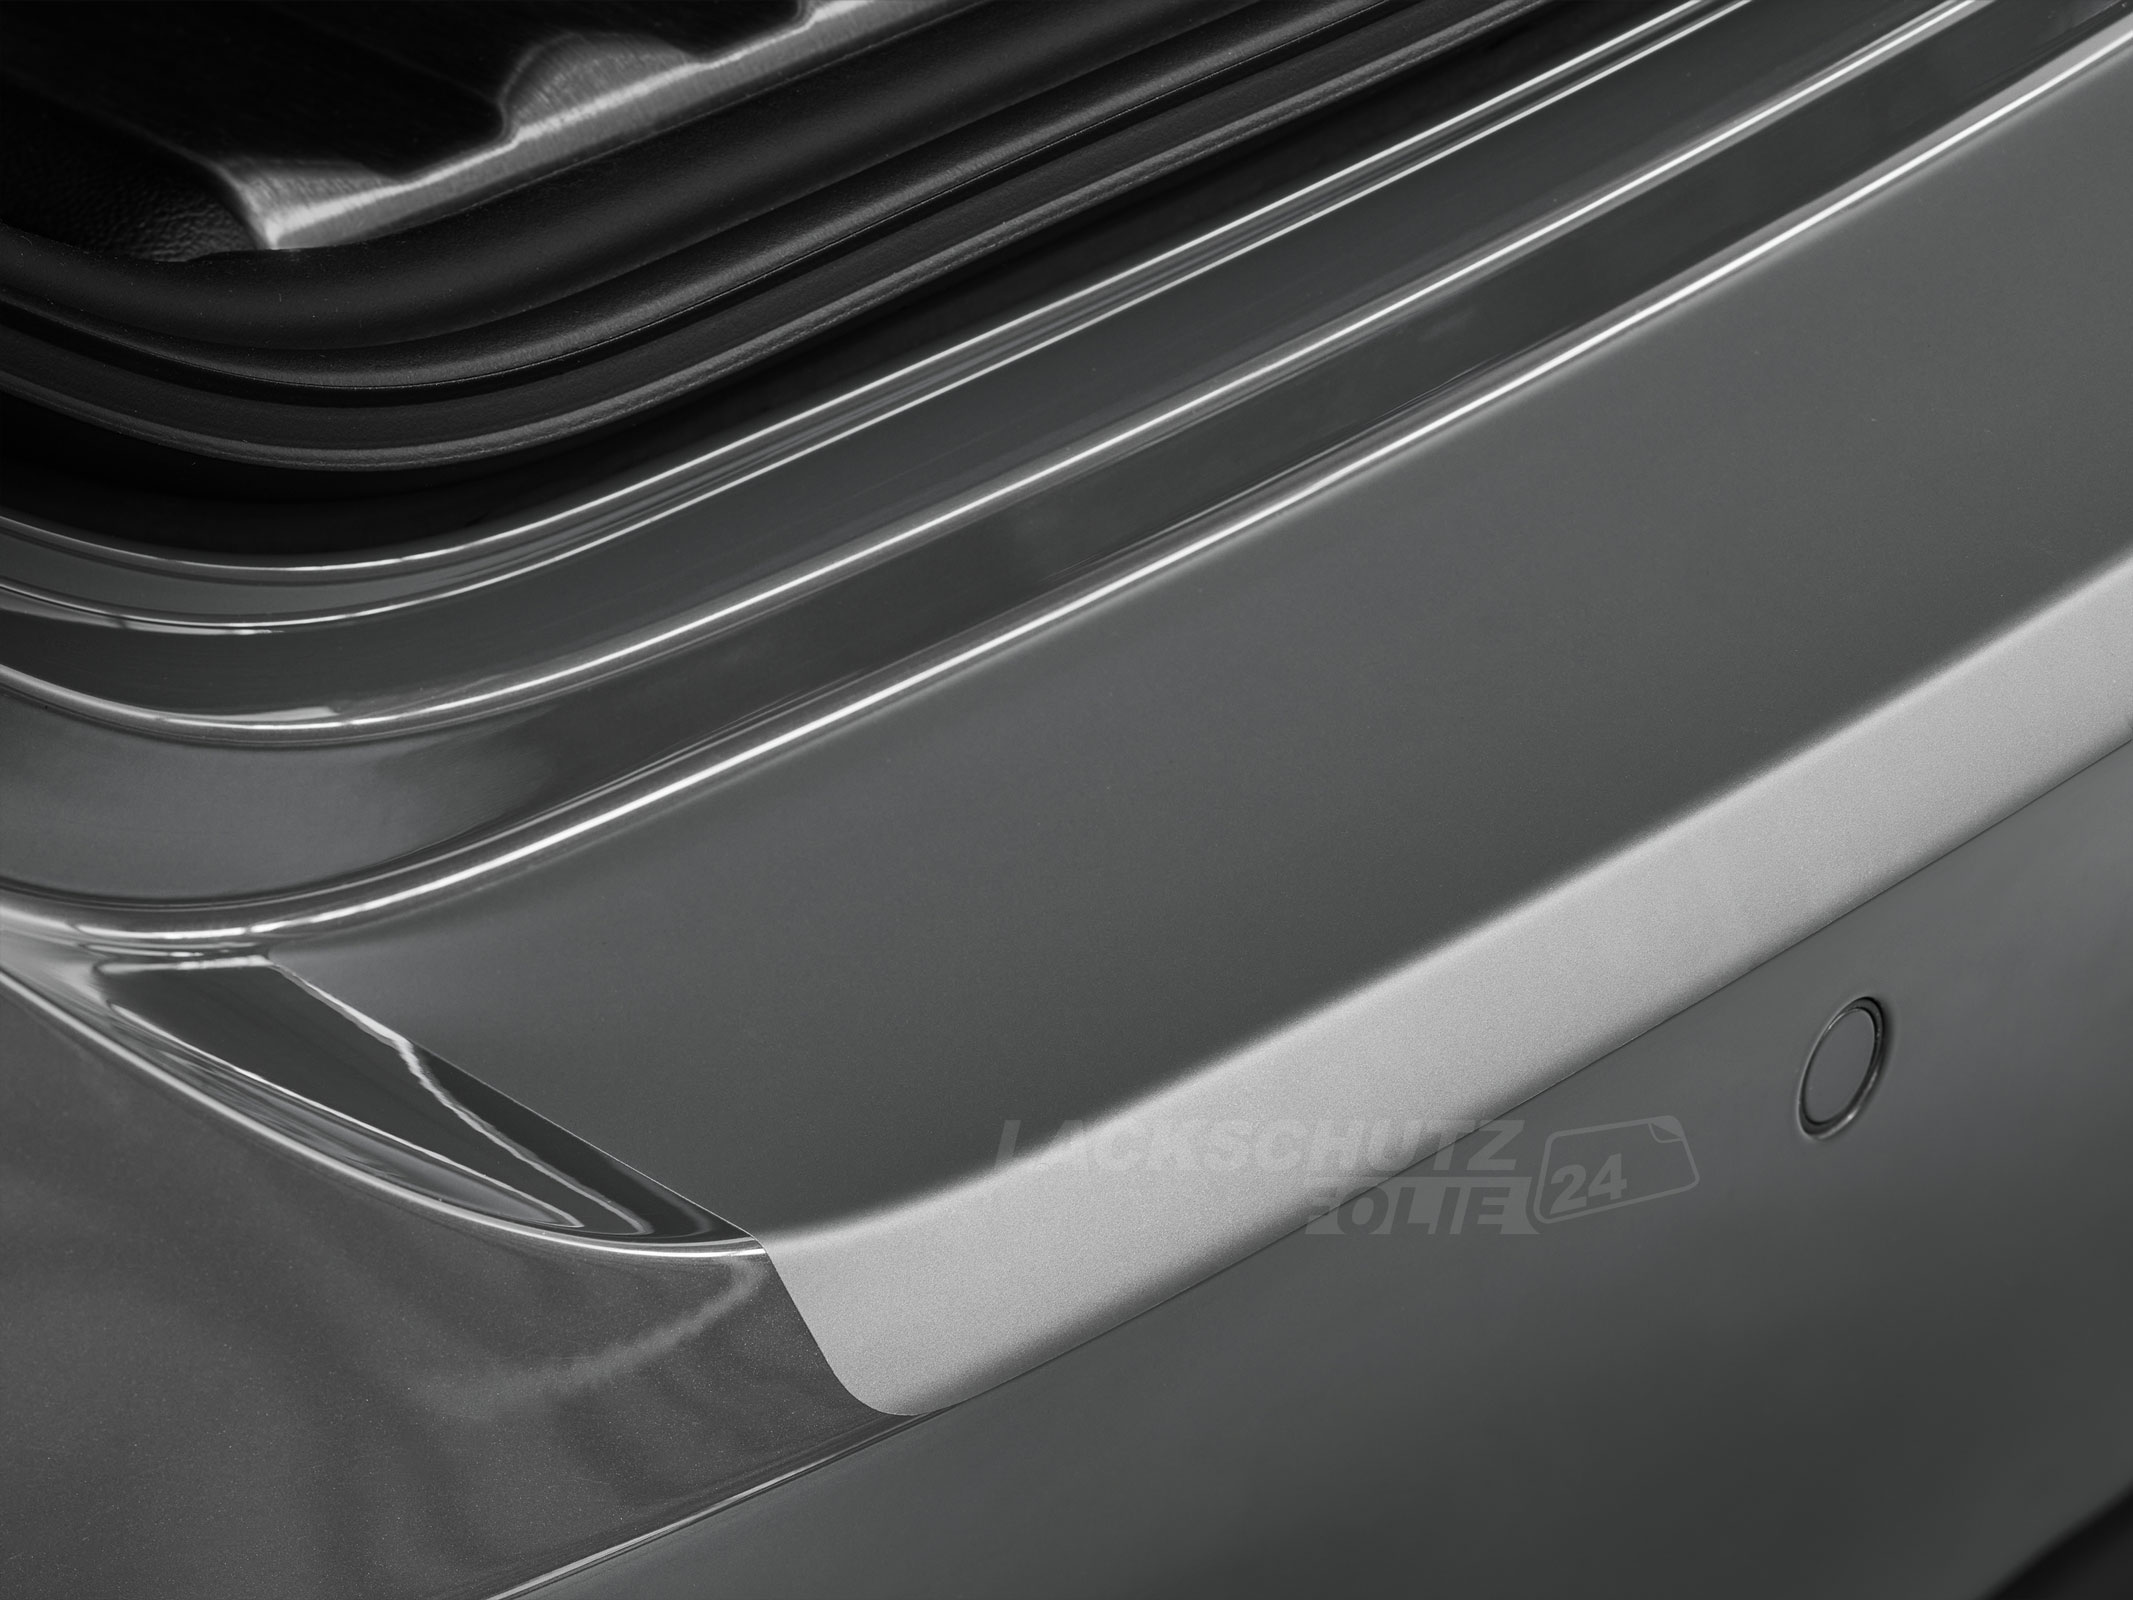 Ladekantenschutzfolie - Transparent Glatt MATT 110 µm stark  für Hyundai Matrix 2. Facelift, BJ 2008-2010